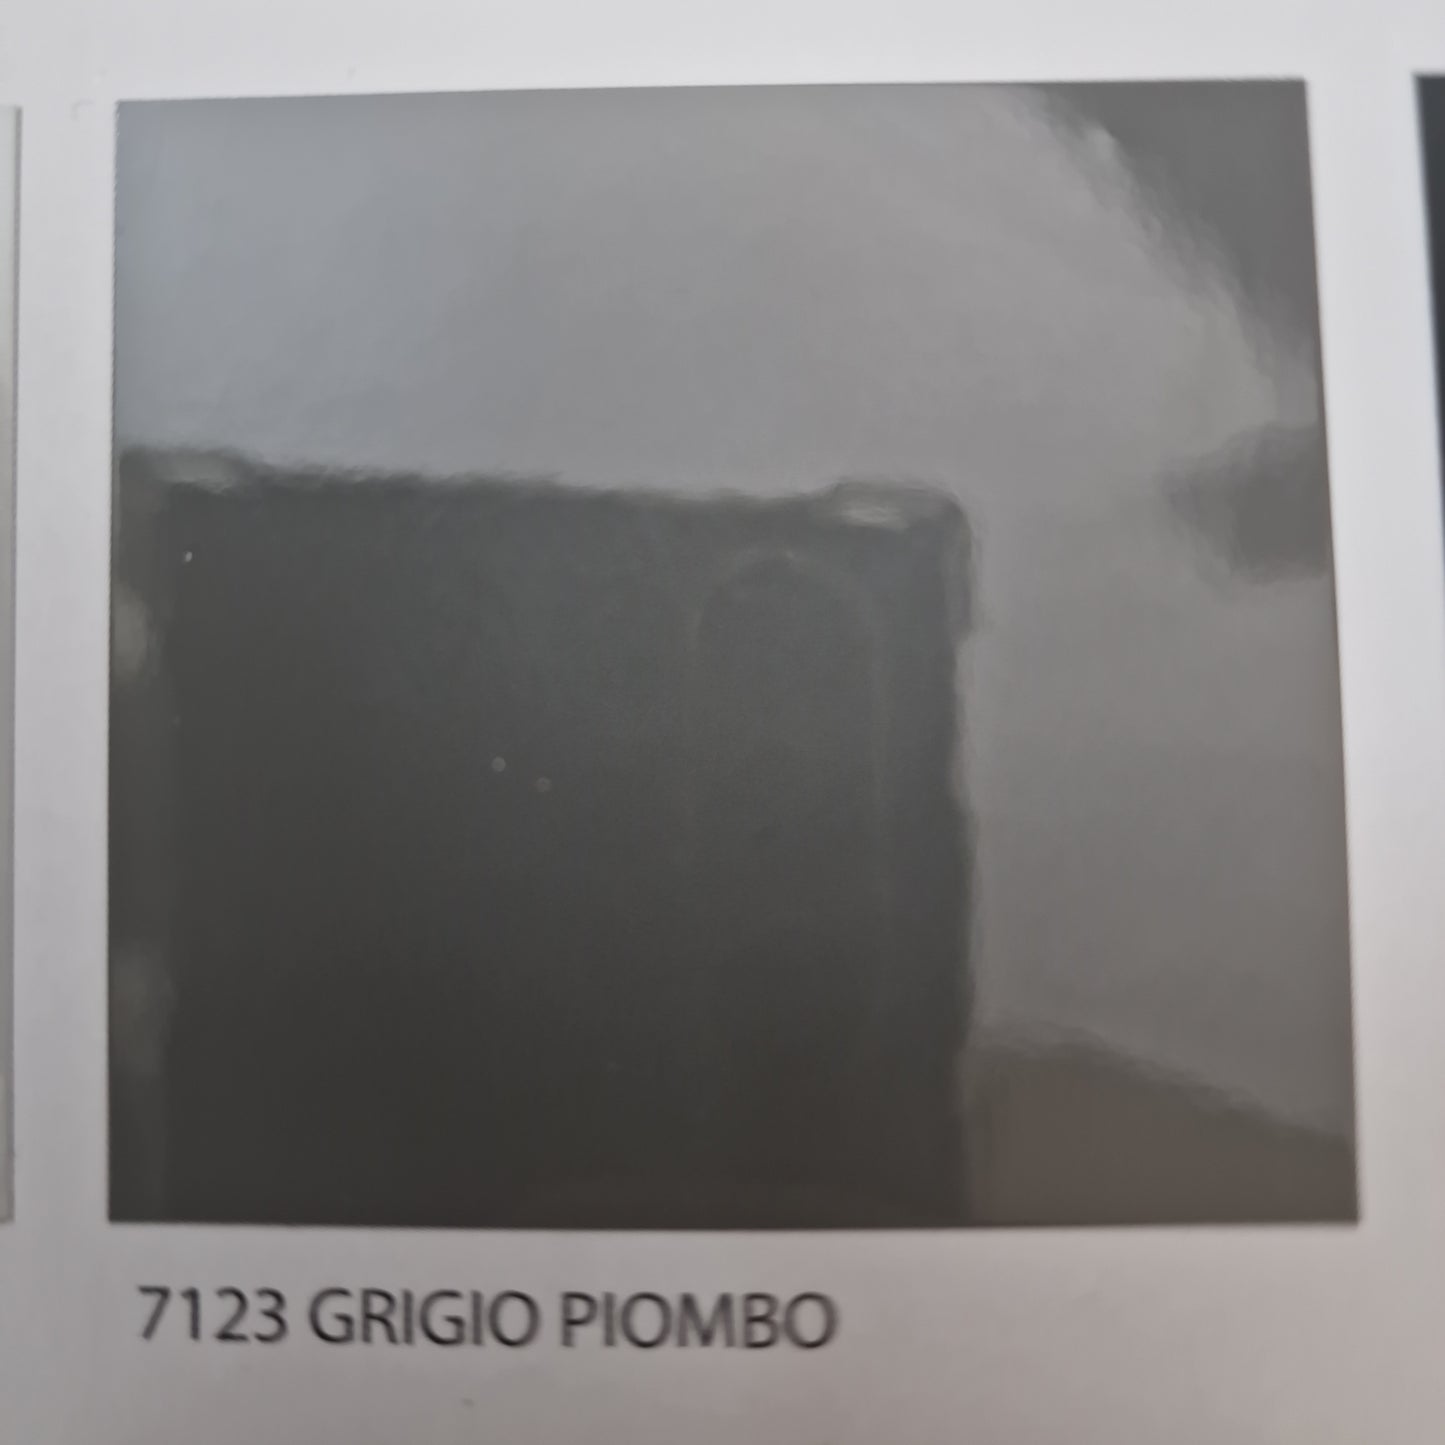 SMALTO ANTIRUGGINE PERTE GRIGIO PIOMBO LUCIDO 0,75Lt